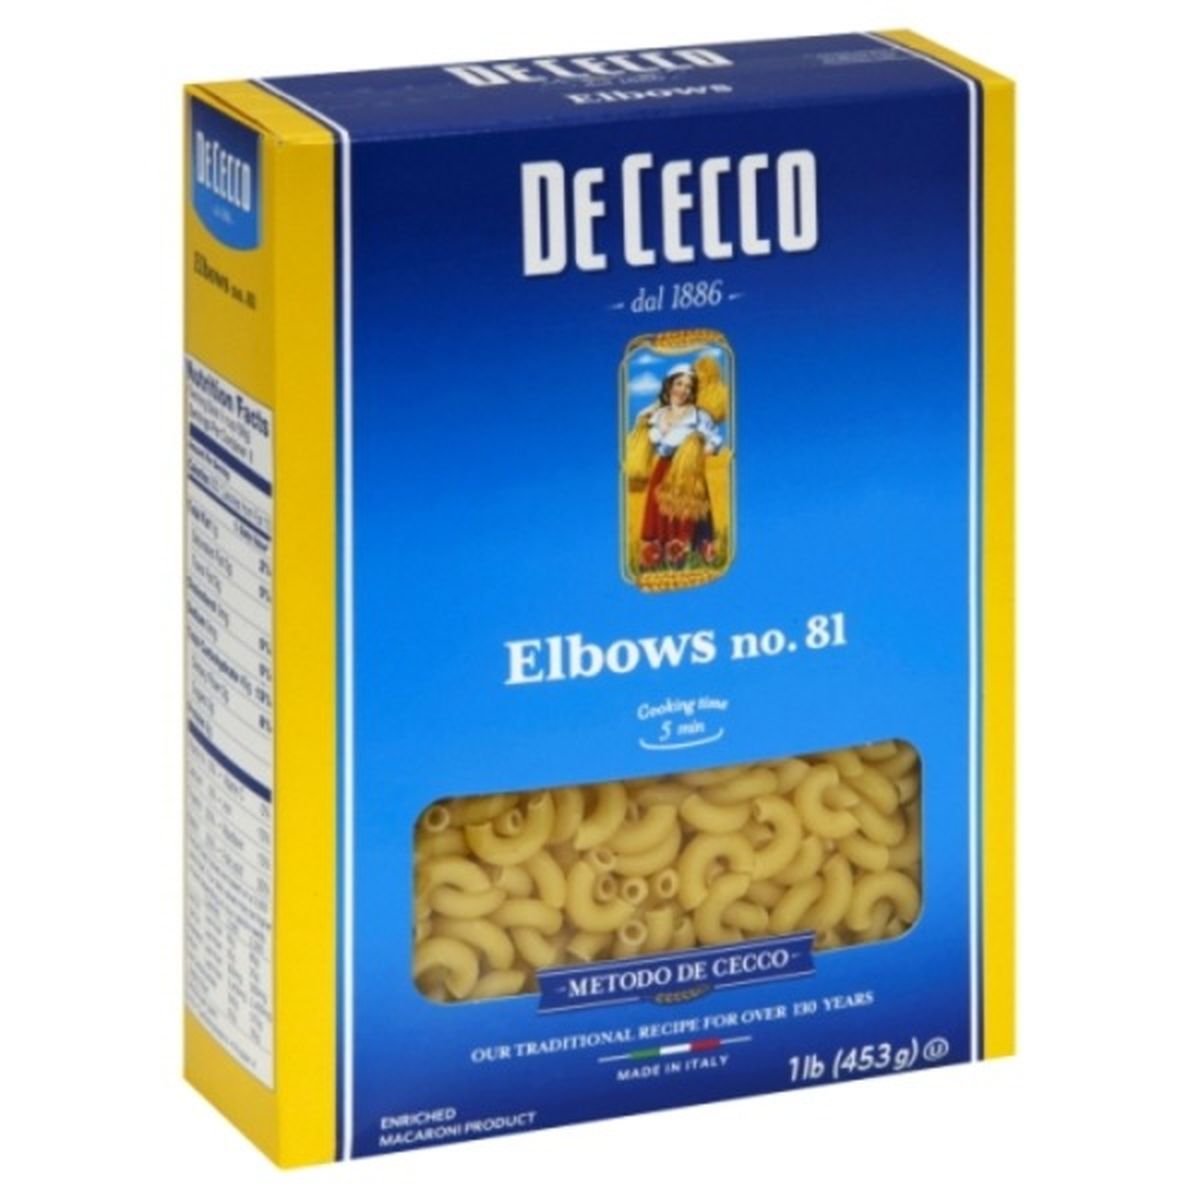 Calories in De Cecco Elbows, No. 81